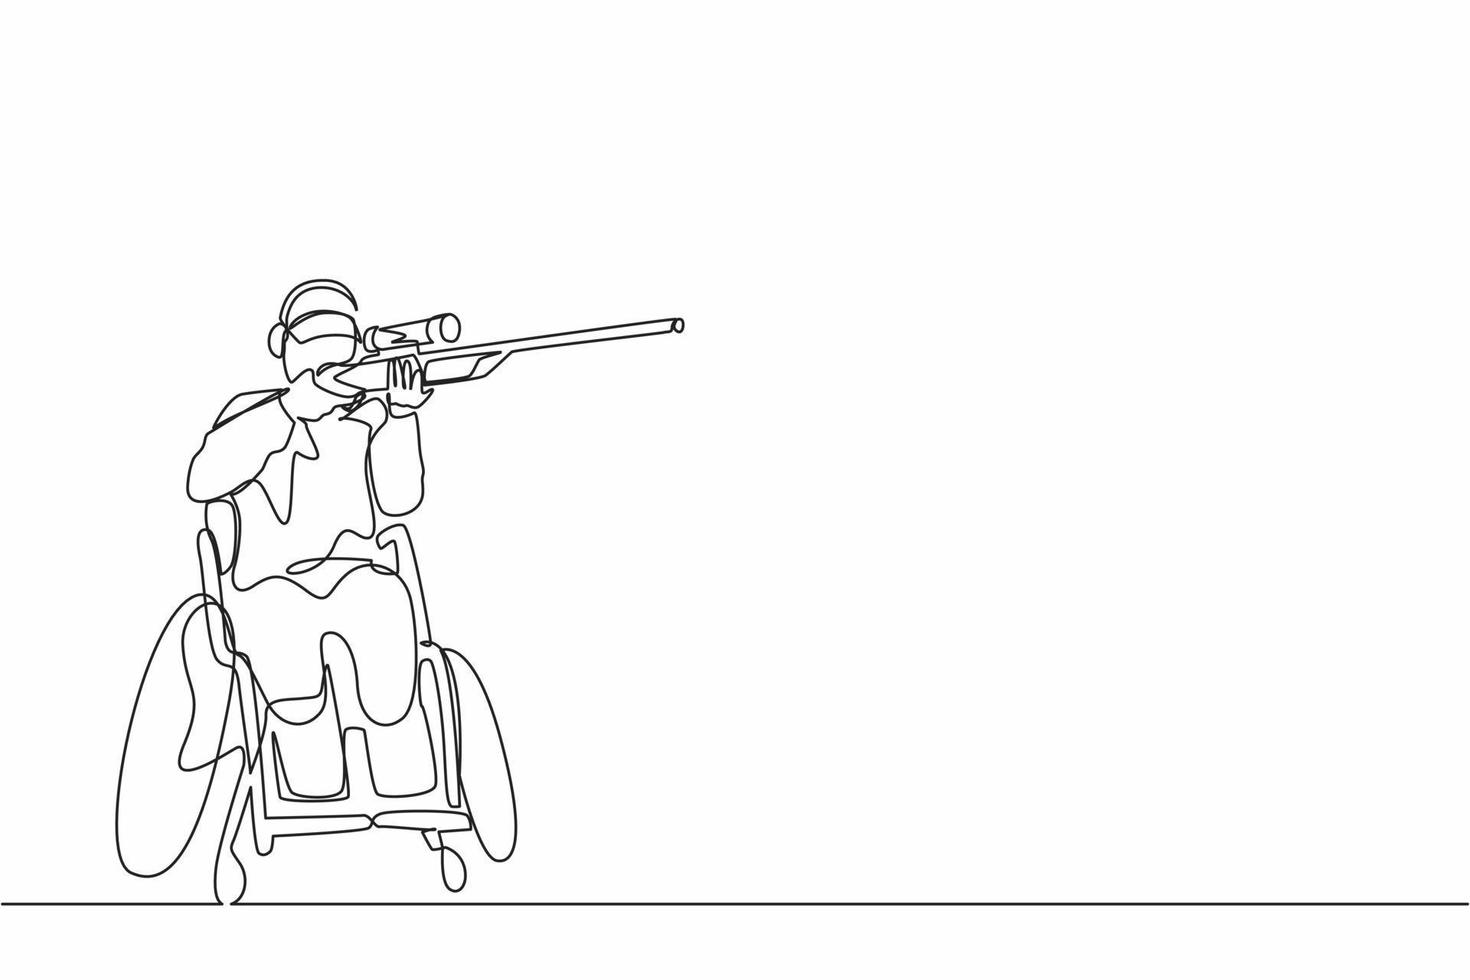 atleta maschio di disegno a linea continua singola sulla competizione sportiva di tiro su sedia a rotelle con fucile. hobby e interessi delle persone con disabilità. illustrazione vettoriale di un disegno di linea